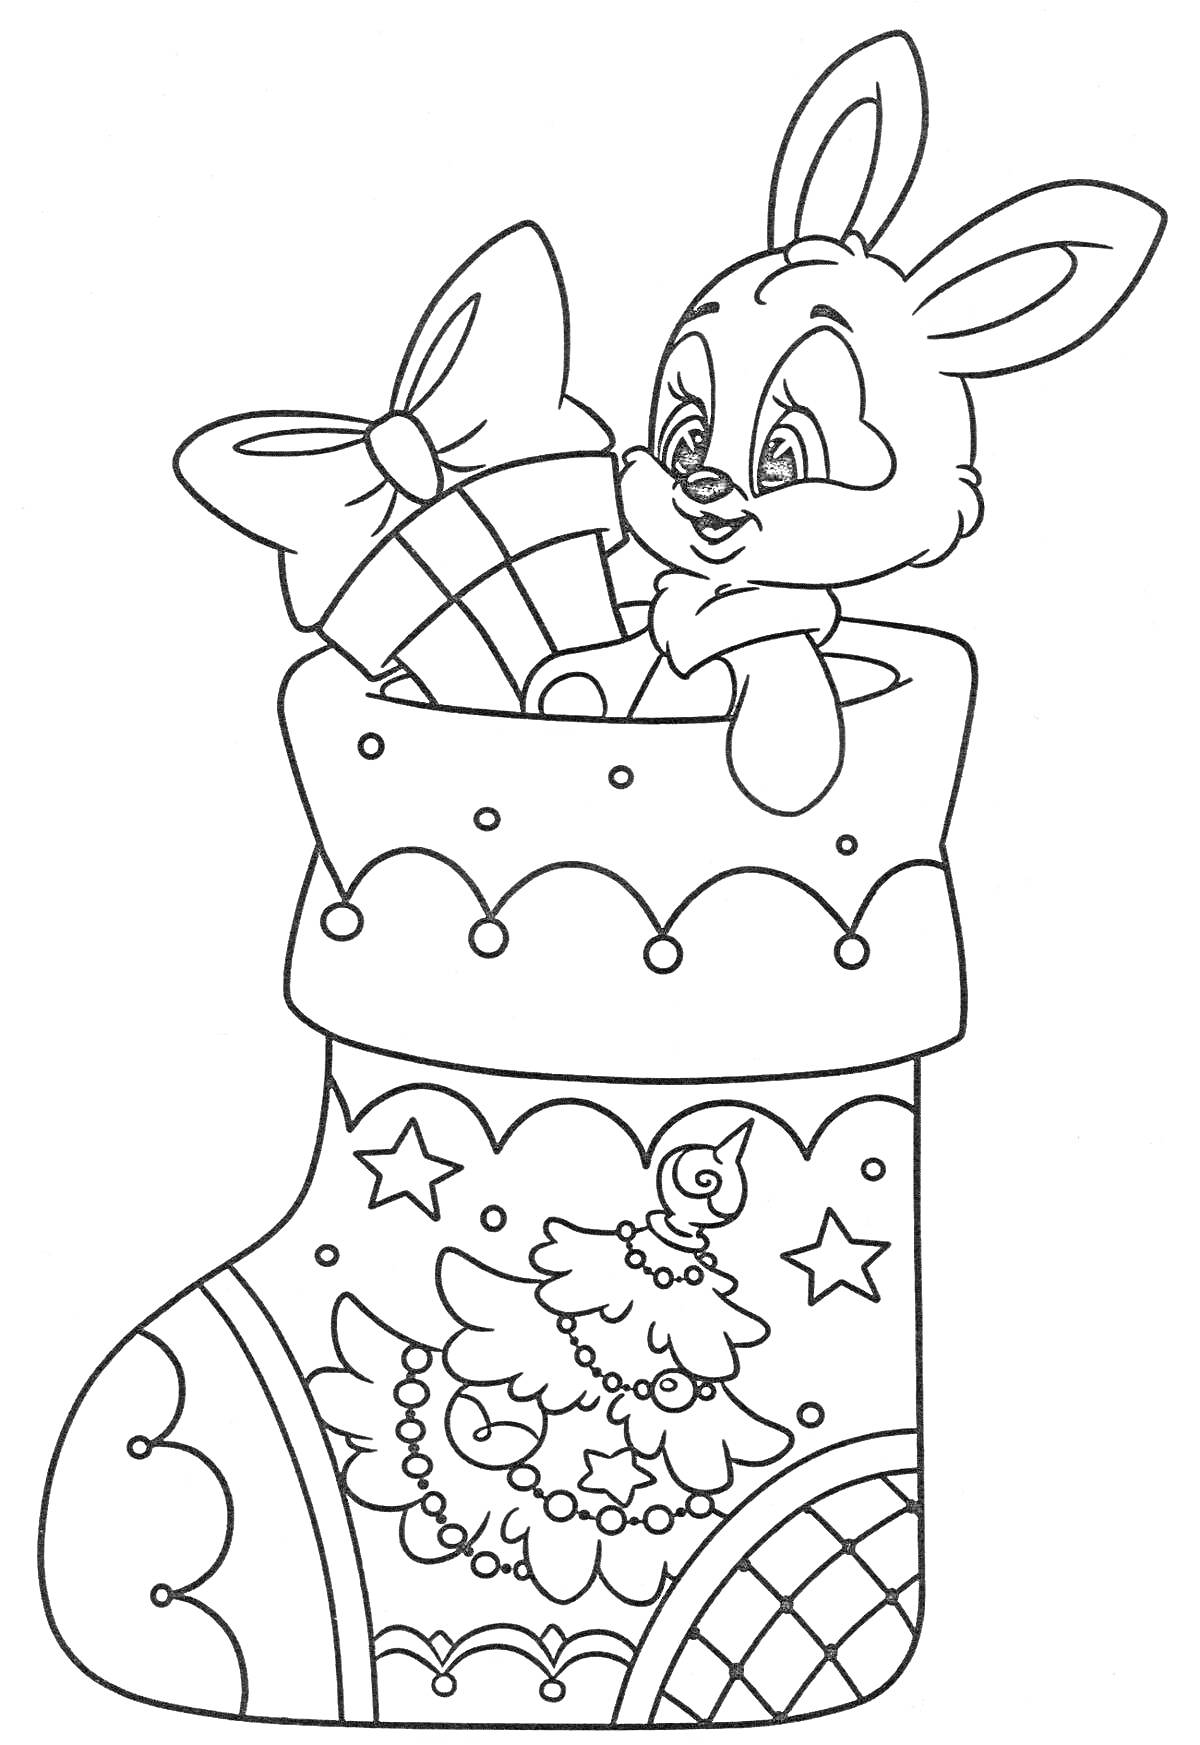 Раскраска Кролик в новогоднем сапожке с подарками, украшенном ёлкой и звёздами